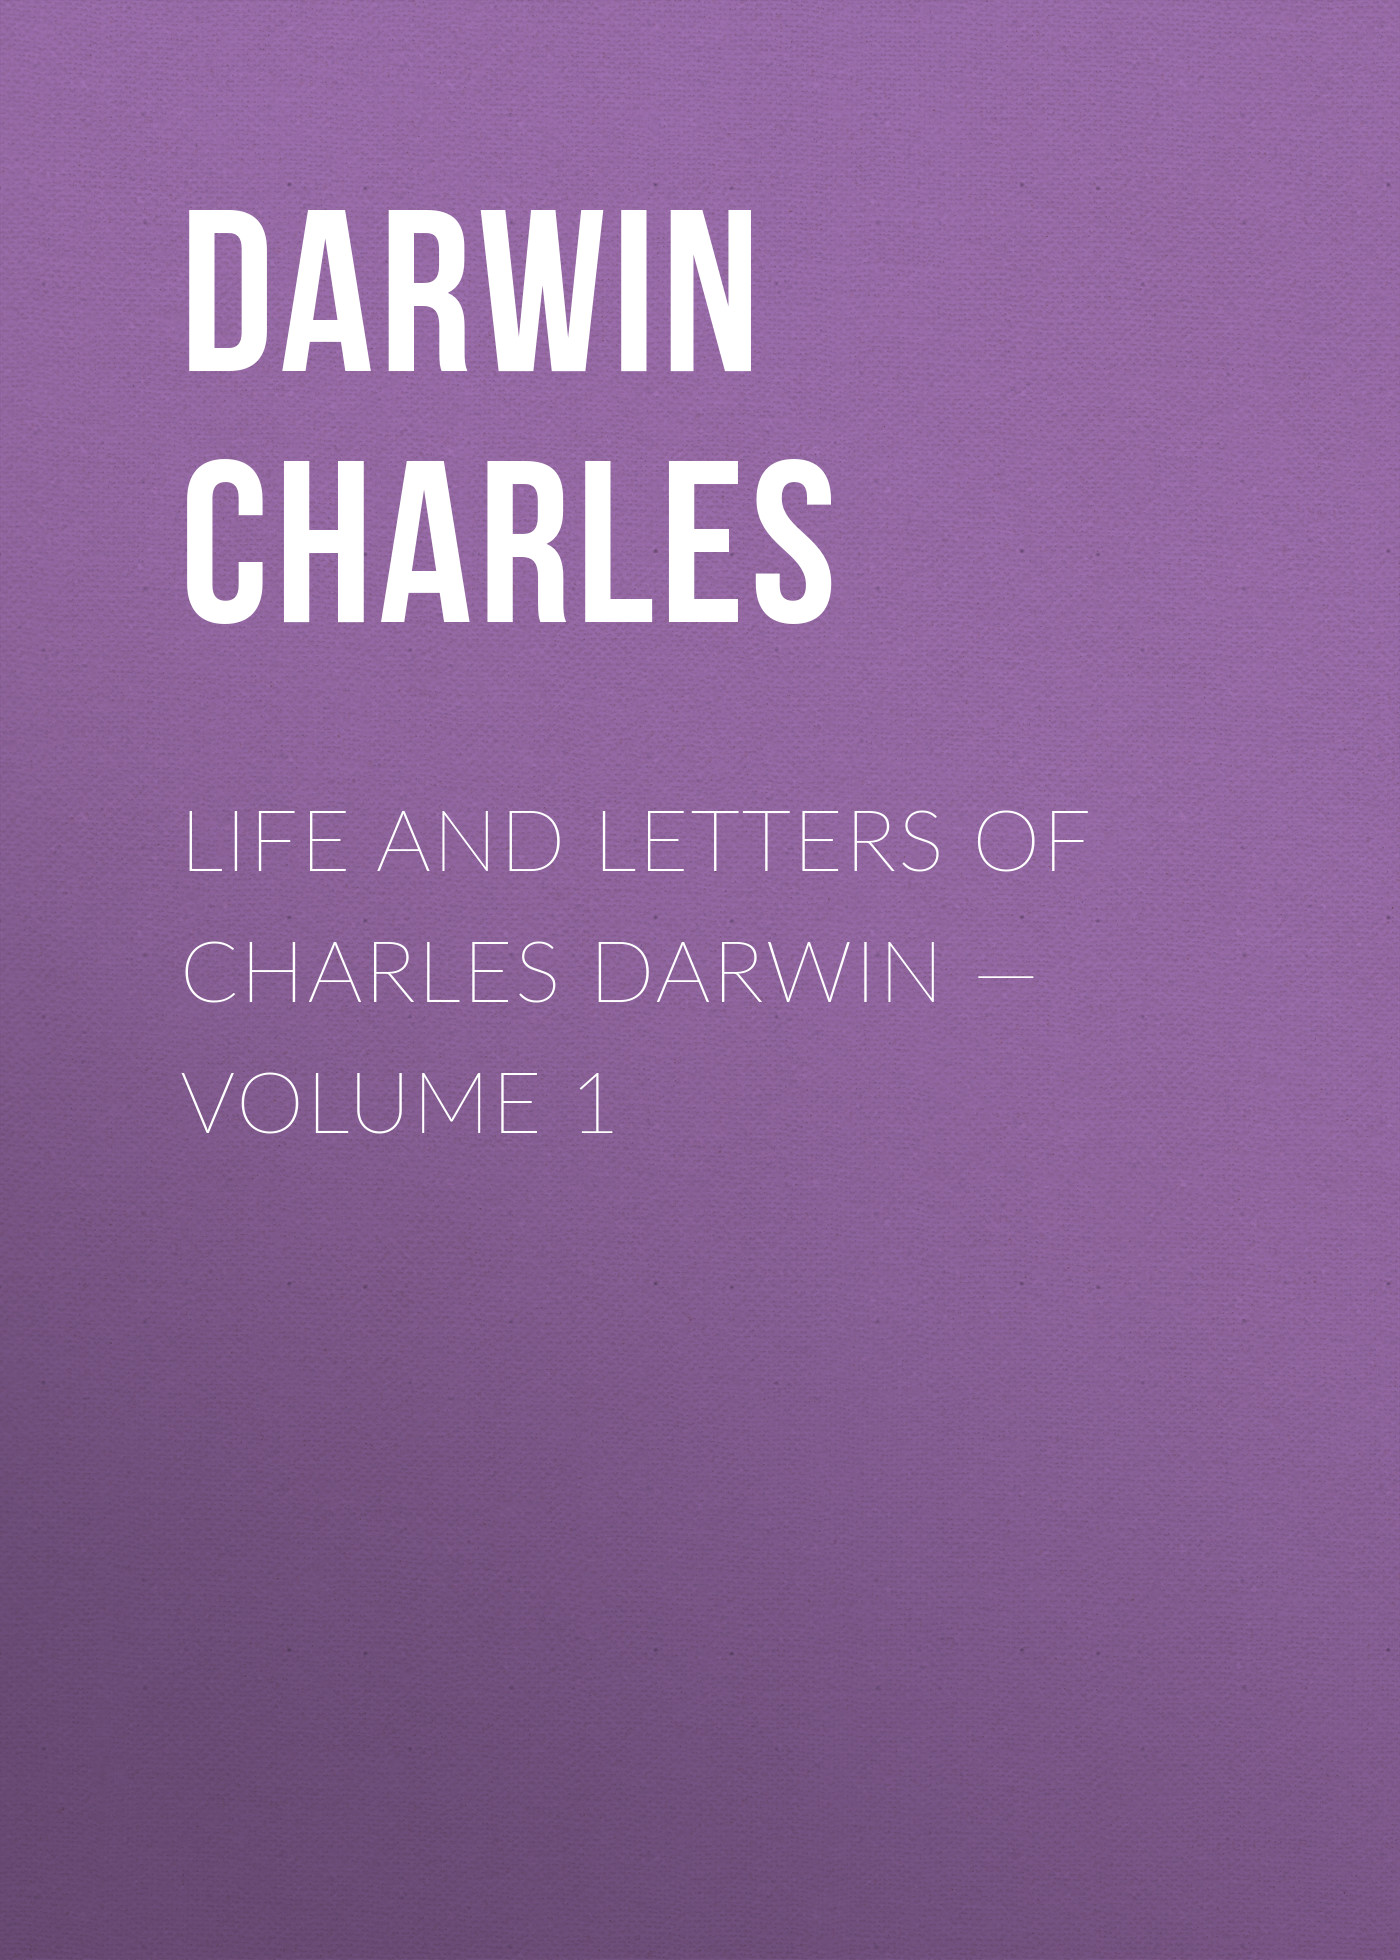 Книга Life and Letters of Charles Darwin – Volume 1 из серии , созданная Charles Darwin, может относится к жанру Зарубежная старинная литература, Зарубежная классика. Стоимость электронной книги Life and Letters of Charles Darwin – Volume 1 с идентификатором 25091436 составляет 0 руб.